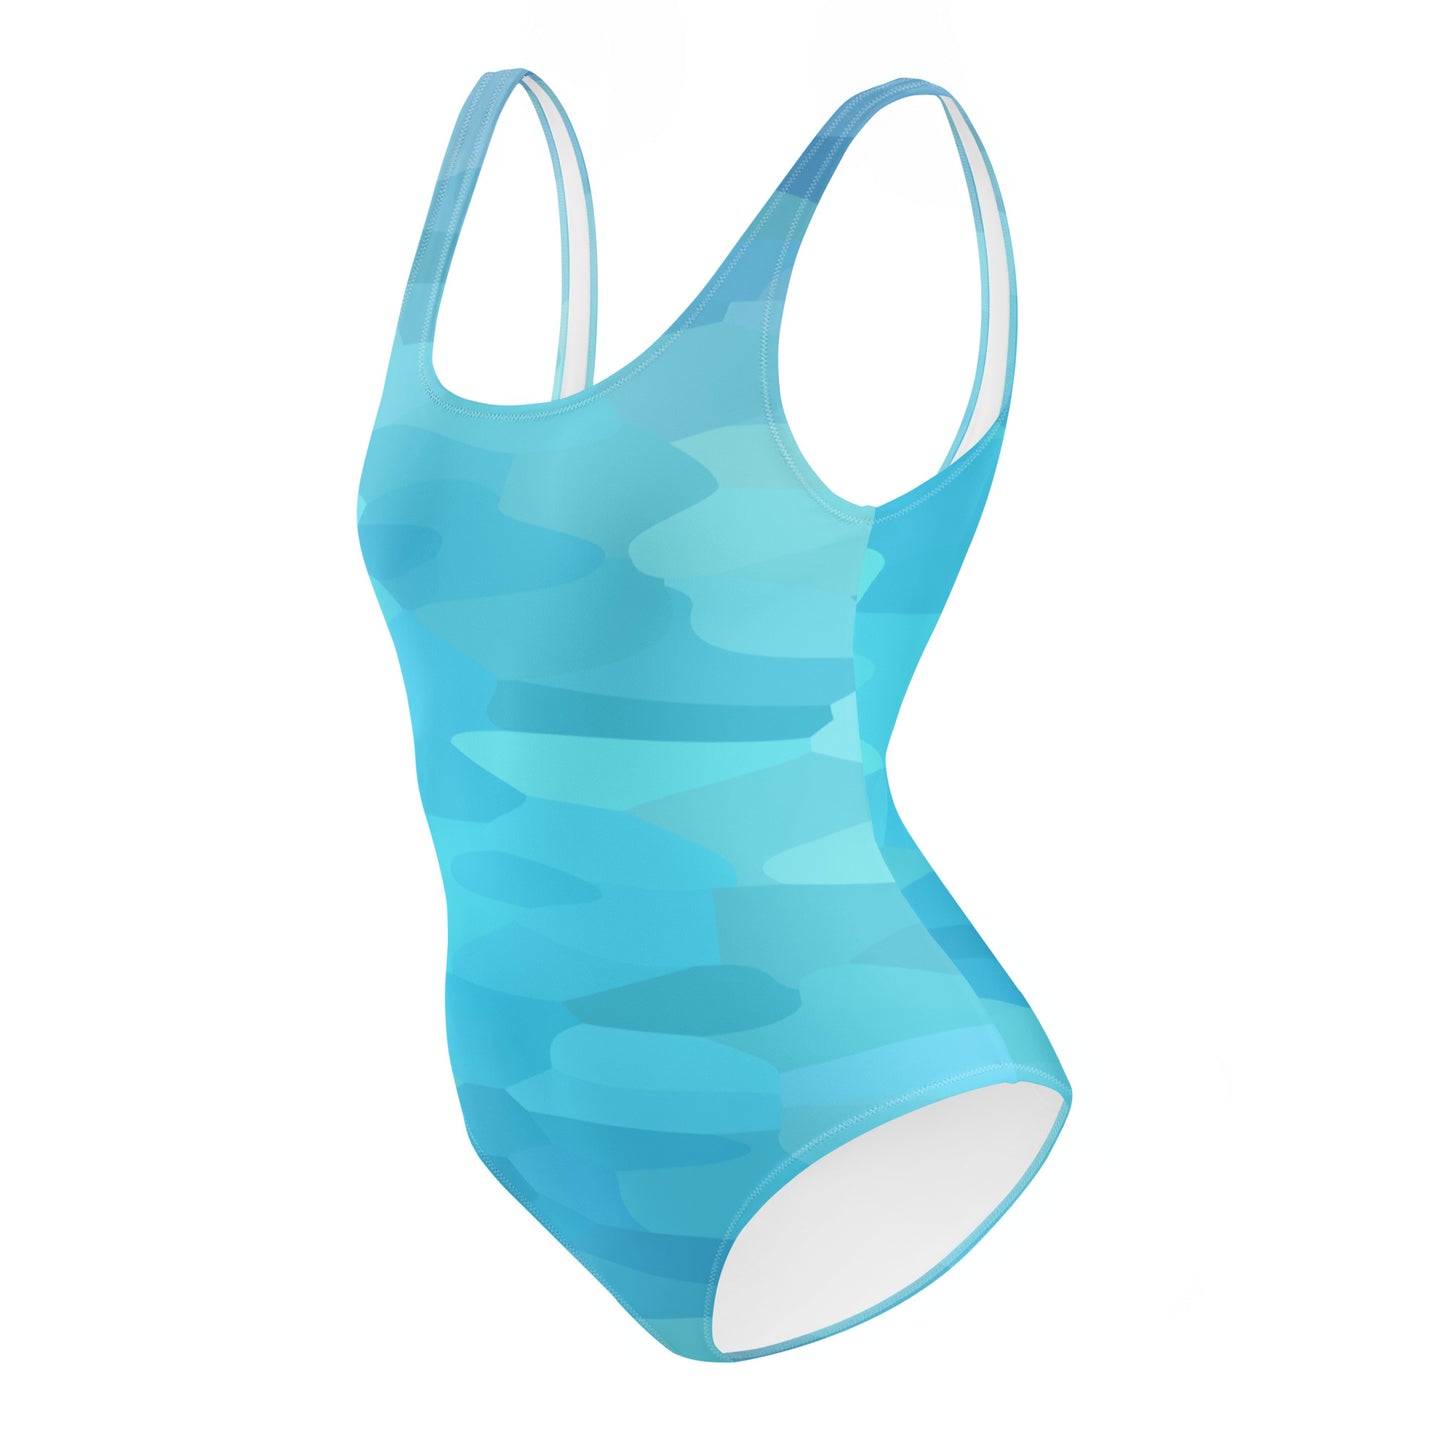 Carpe Diem Gear | Women's Swimsuit | Blue Water Camo | Women's One-Piece Swimsuit UPF 50+